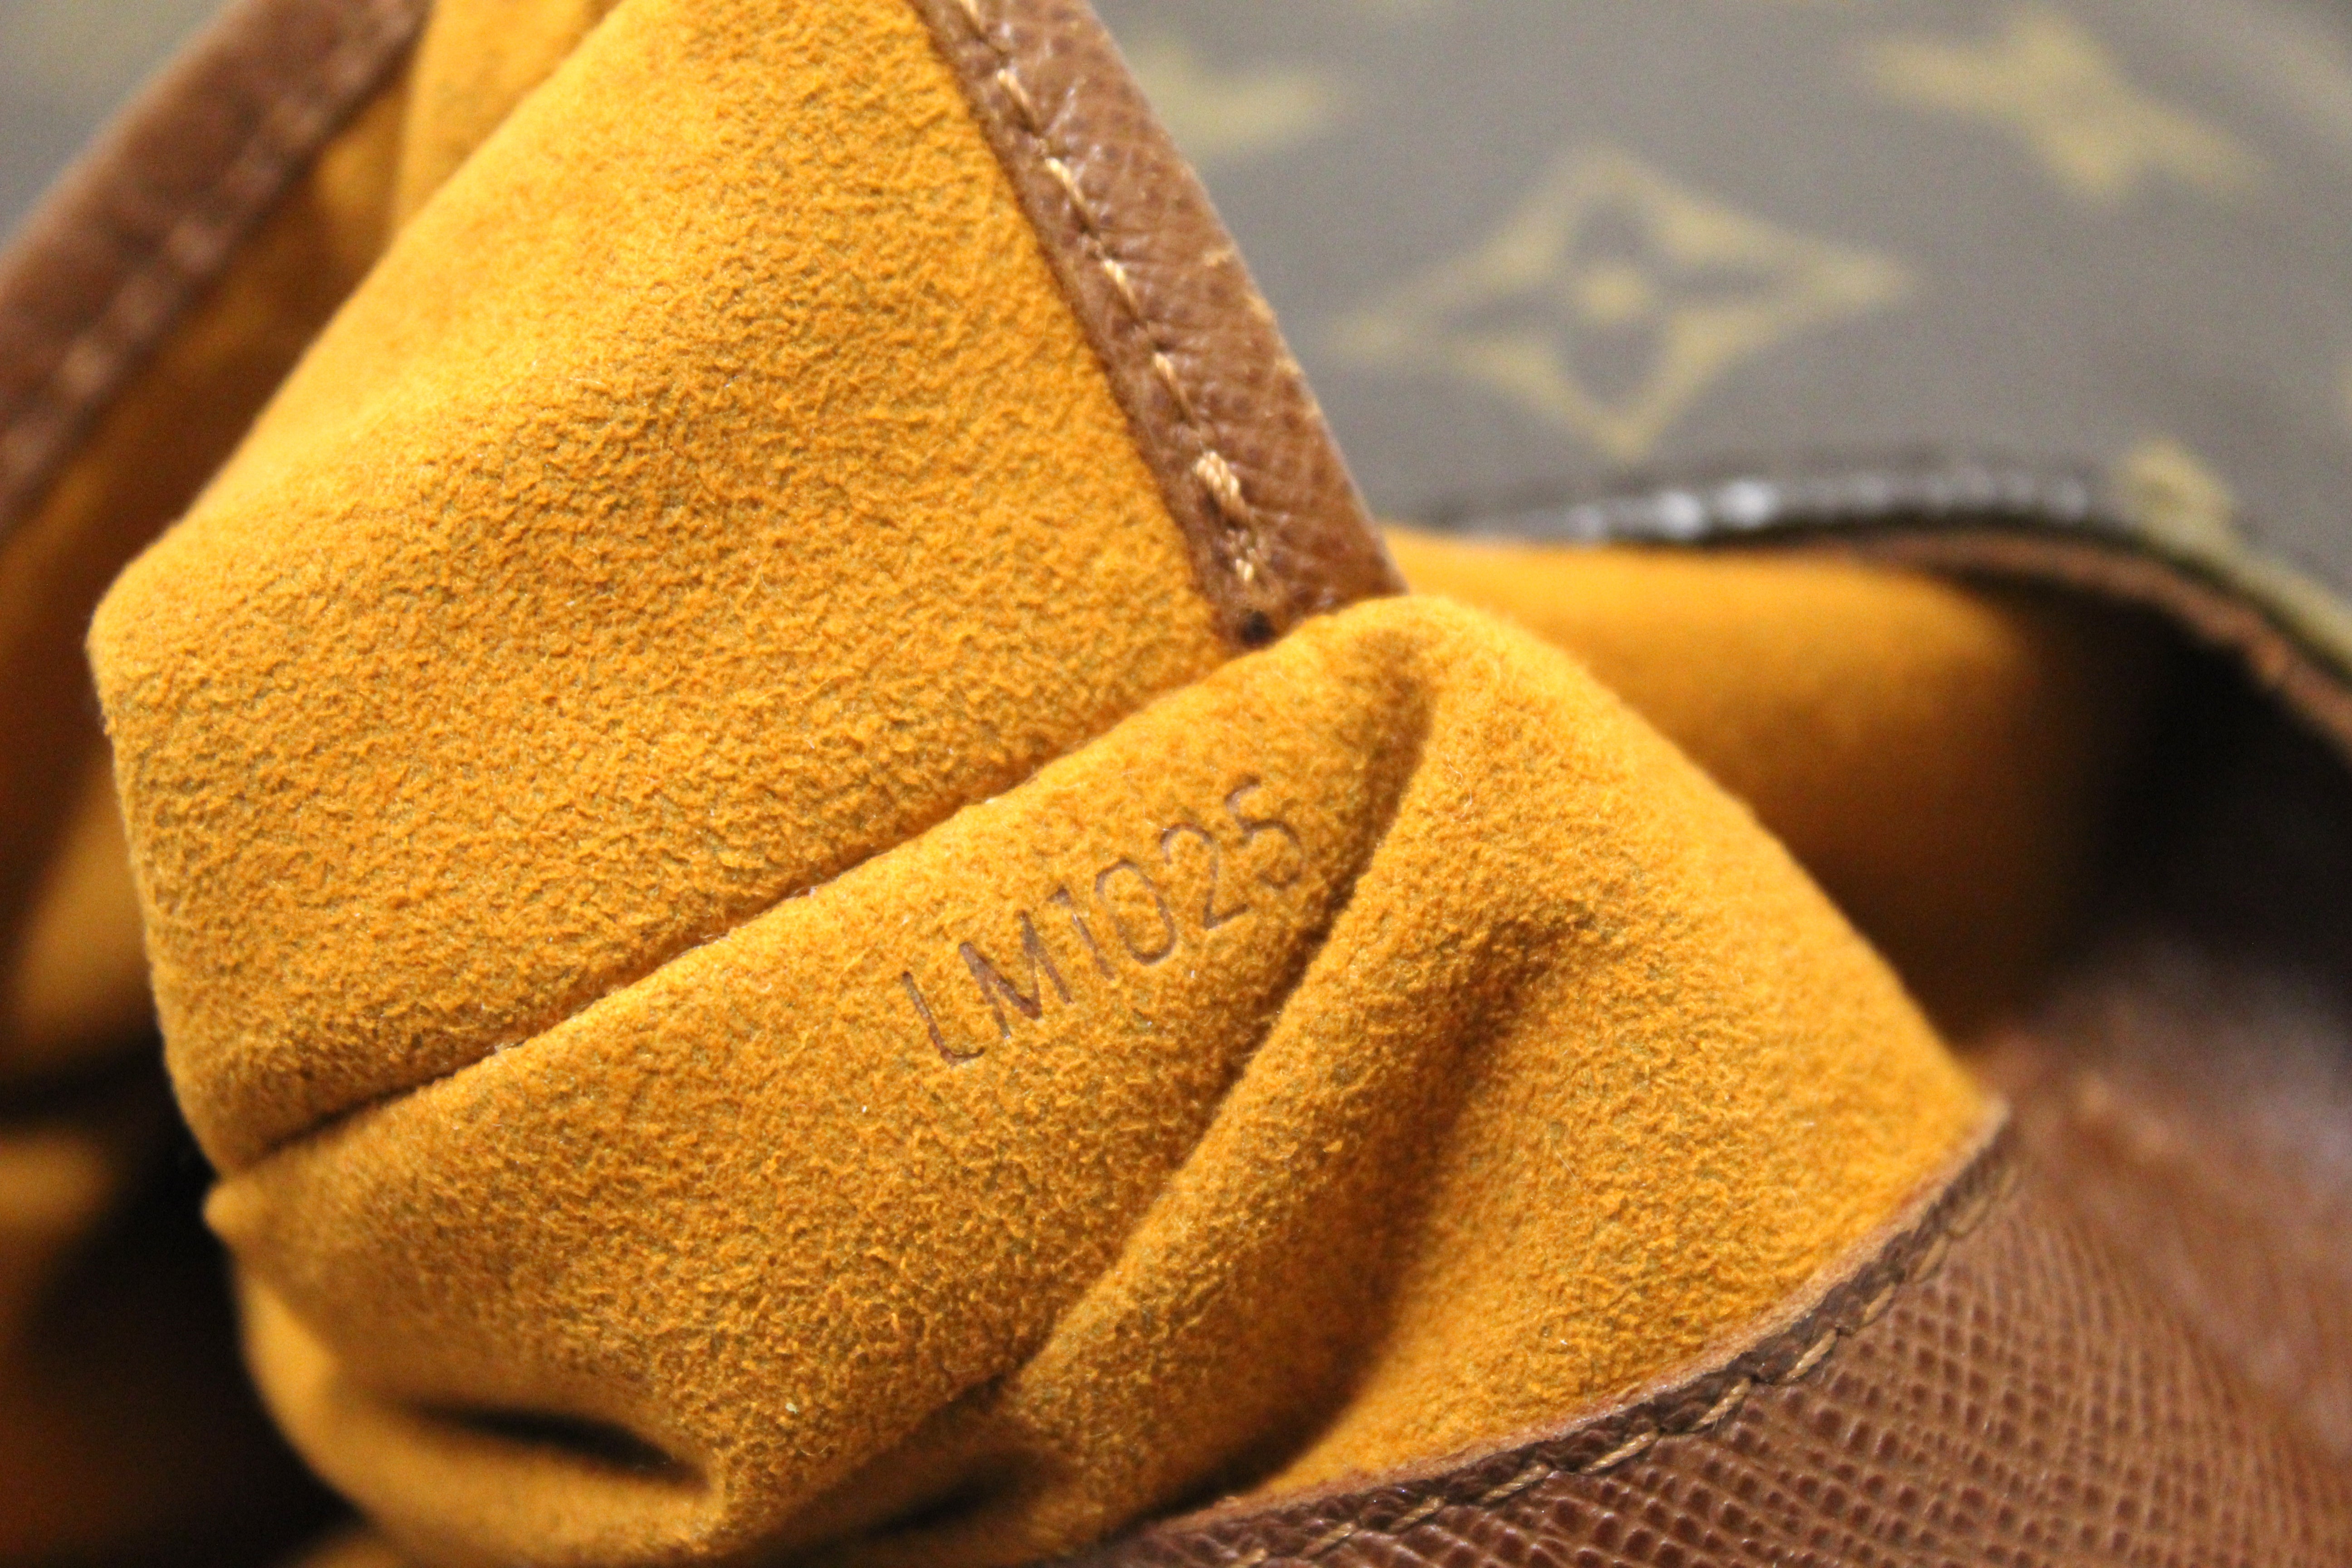 Louis Vuitton Musette Salsa Monogram Gm 14lz1129 Brown Coated Canvas  Messenger Bag, Louis Vuitton